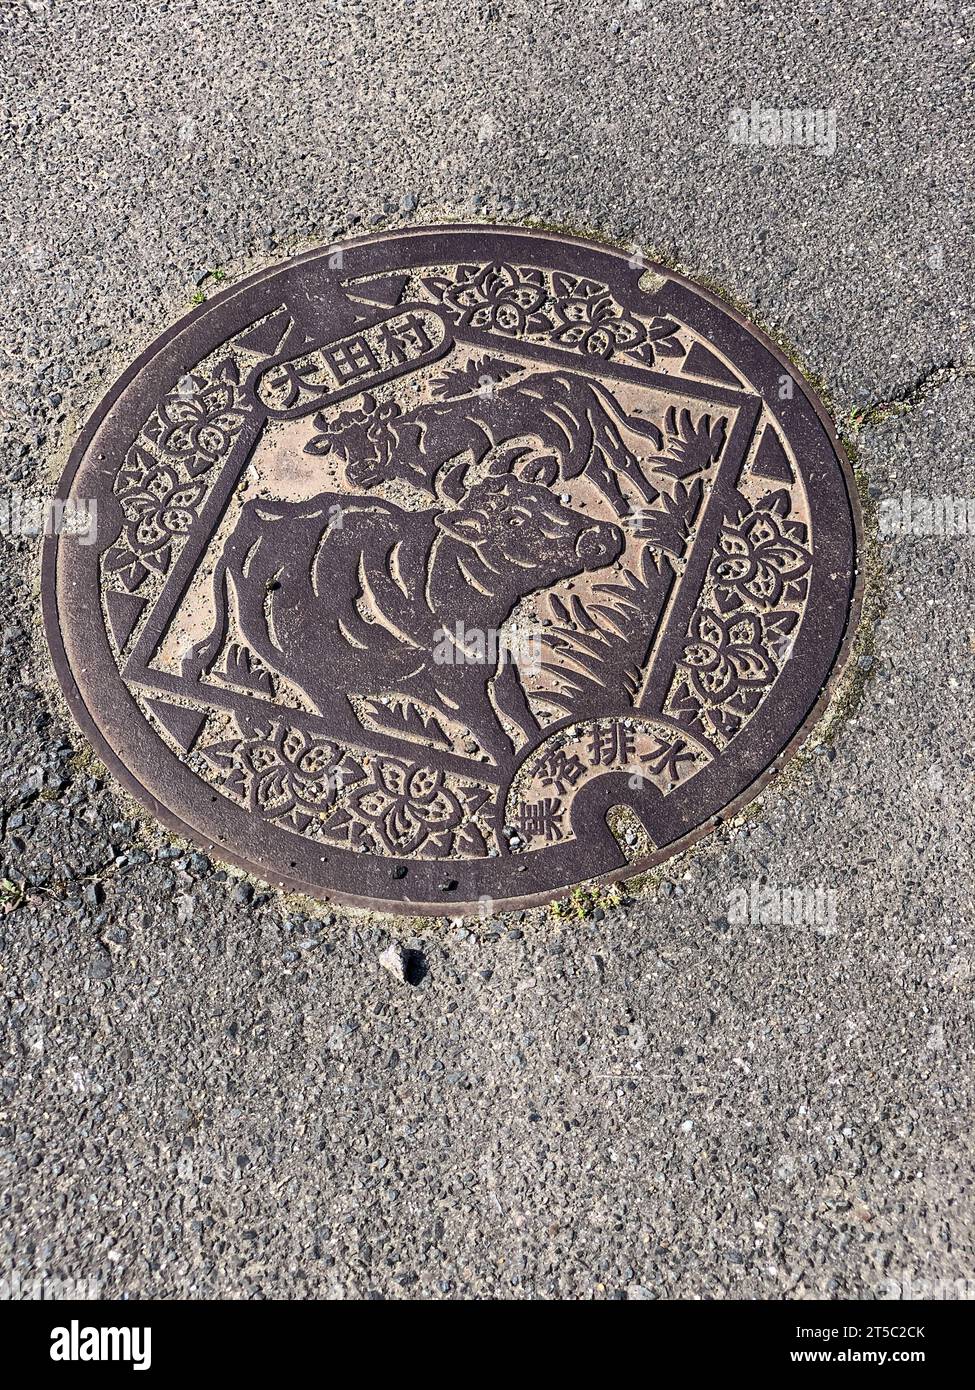 Japan, Kyushu, Kitsuki. Manhole Cover. Stock Photo